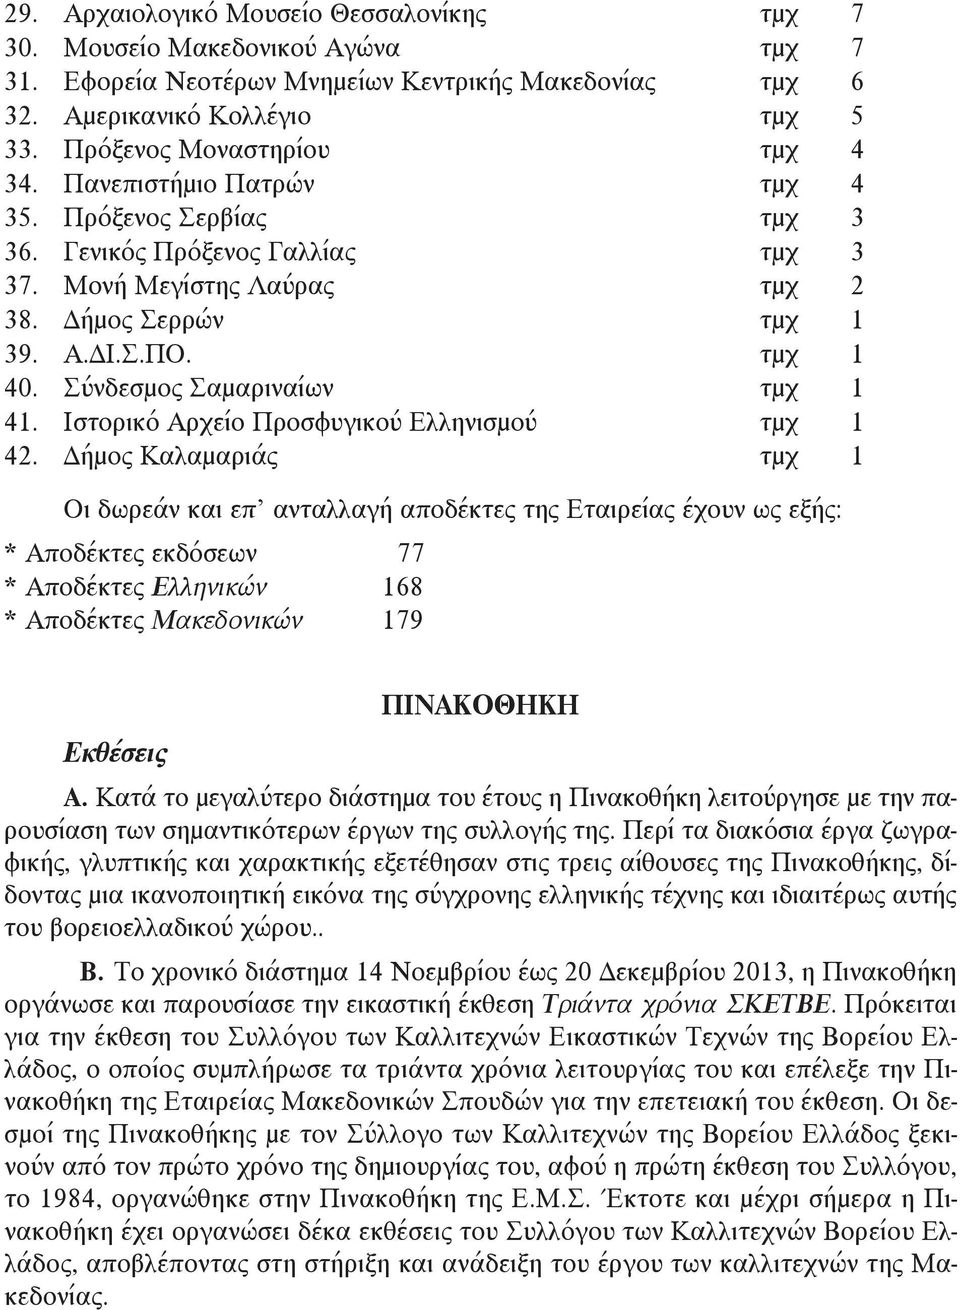 Σύνδεσμος Σαμαριναίων τμχ 1 41. Ιστορικό Αρχείο Προσφυγικού Ελληνισμού τμχ 1 42.